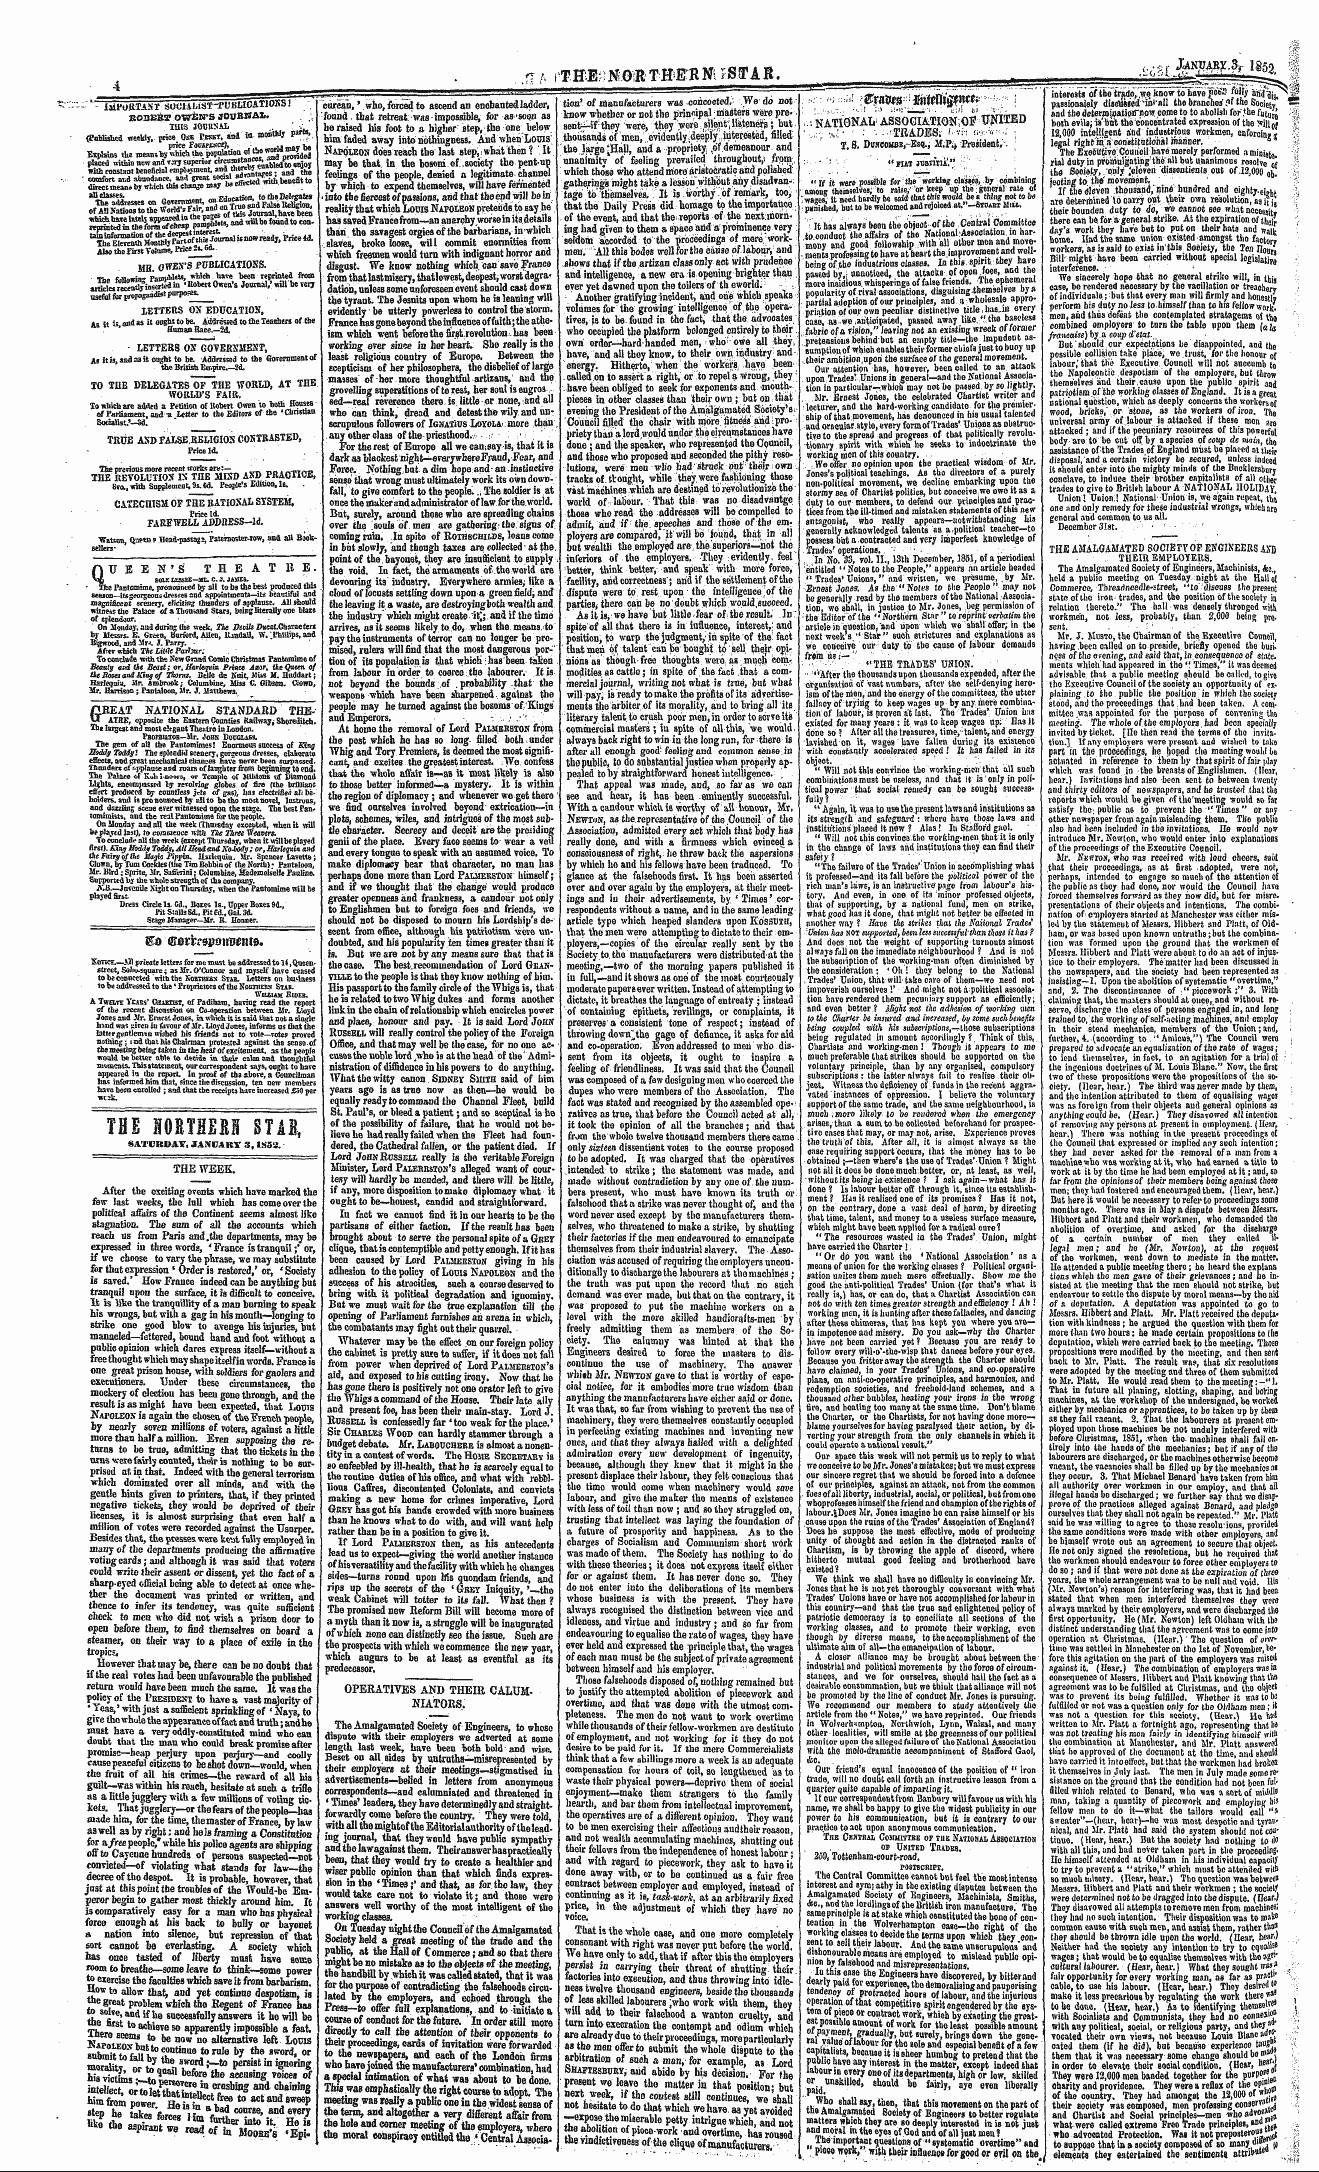 Northern Star (1837-1852): jS F Y, 2nd edition - So Srorrrdpdkb^Itid.